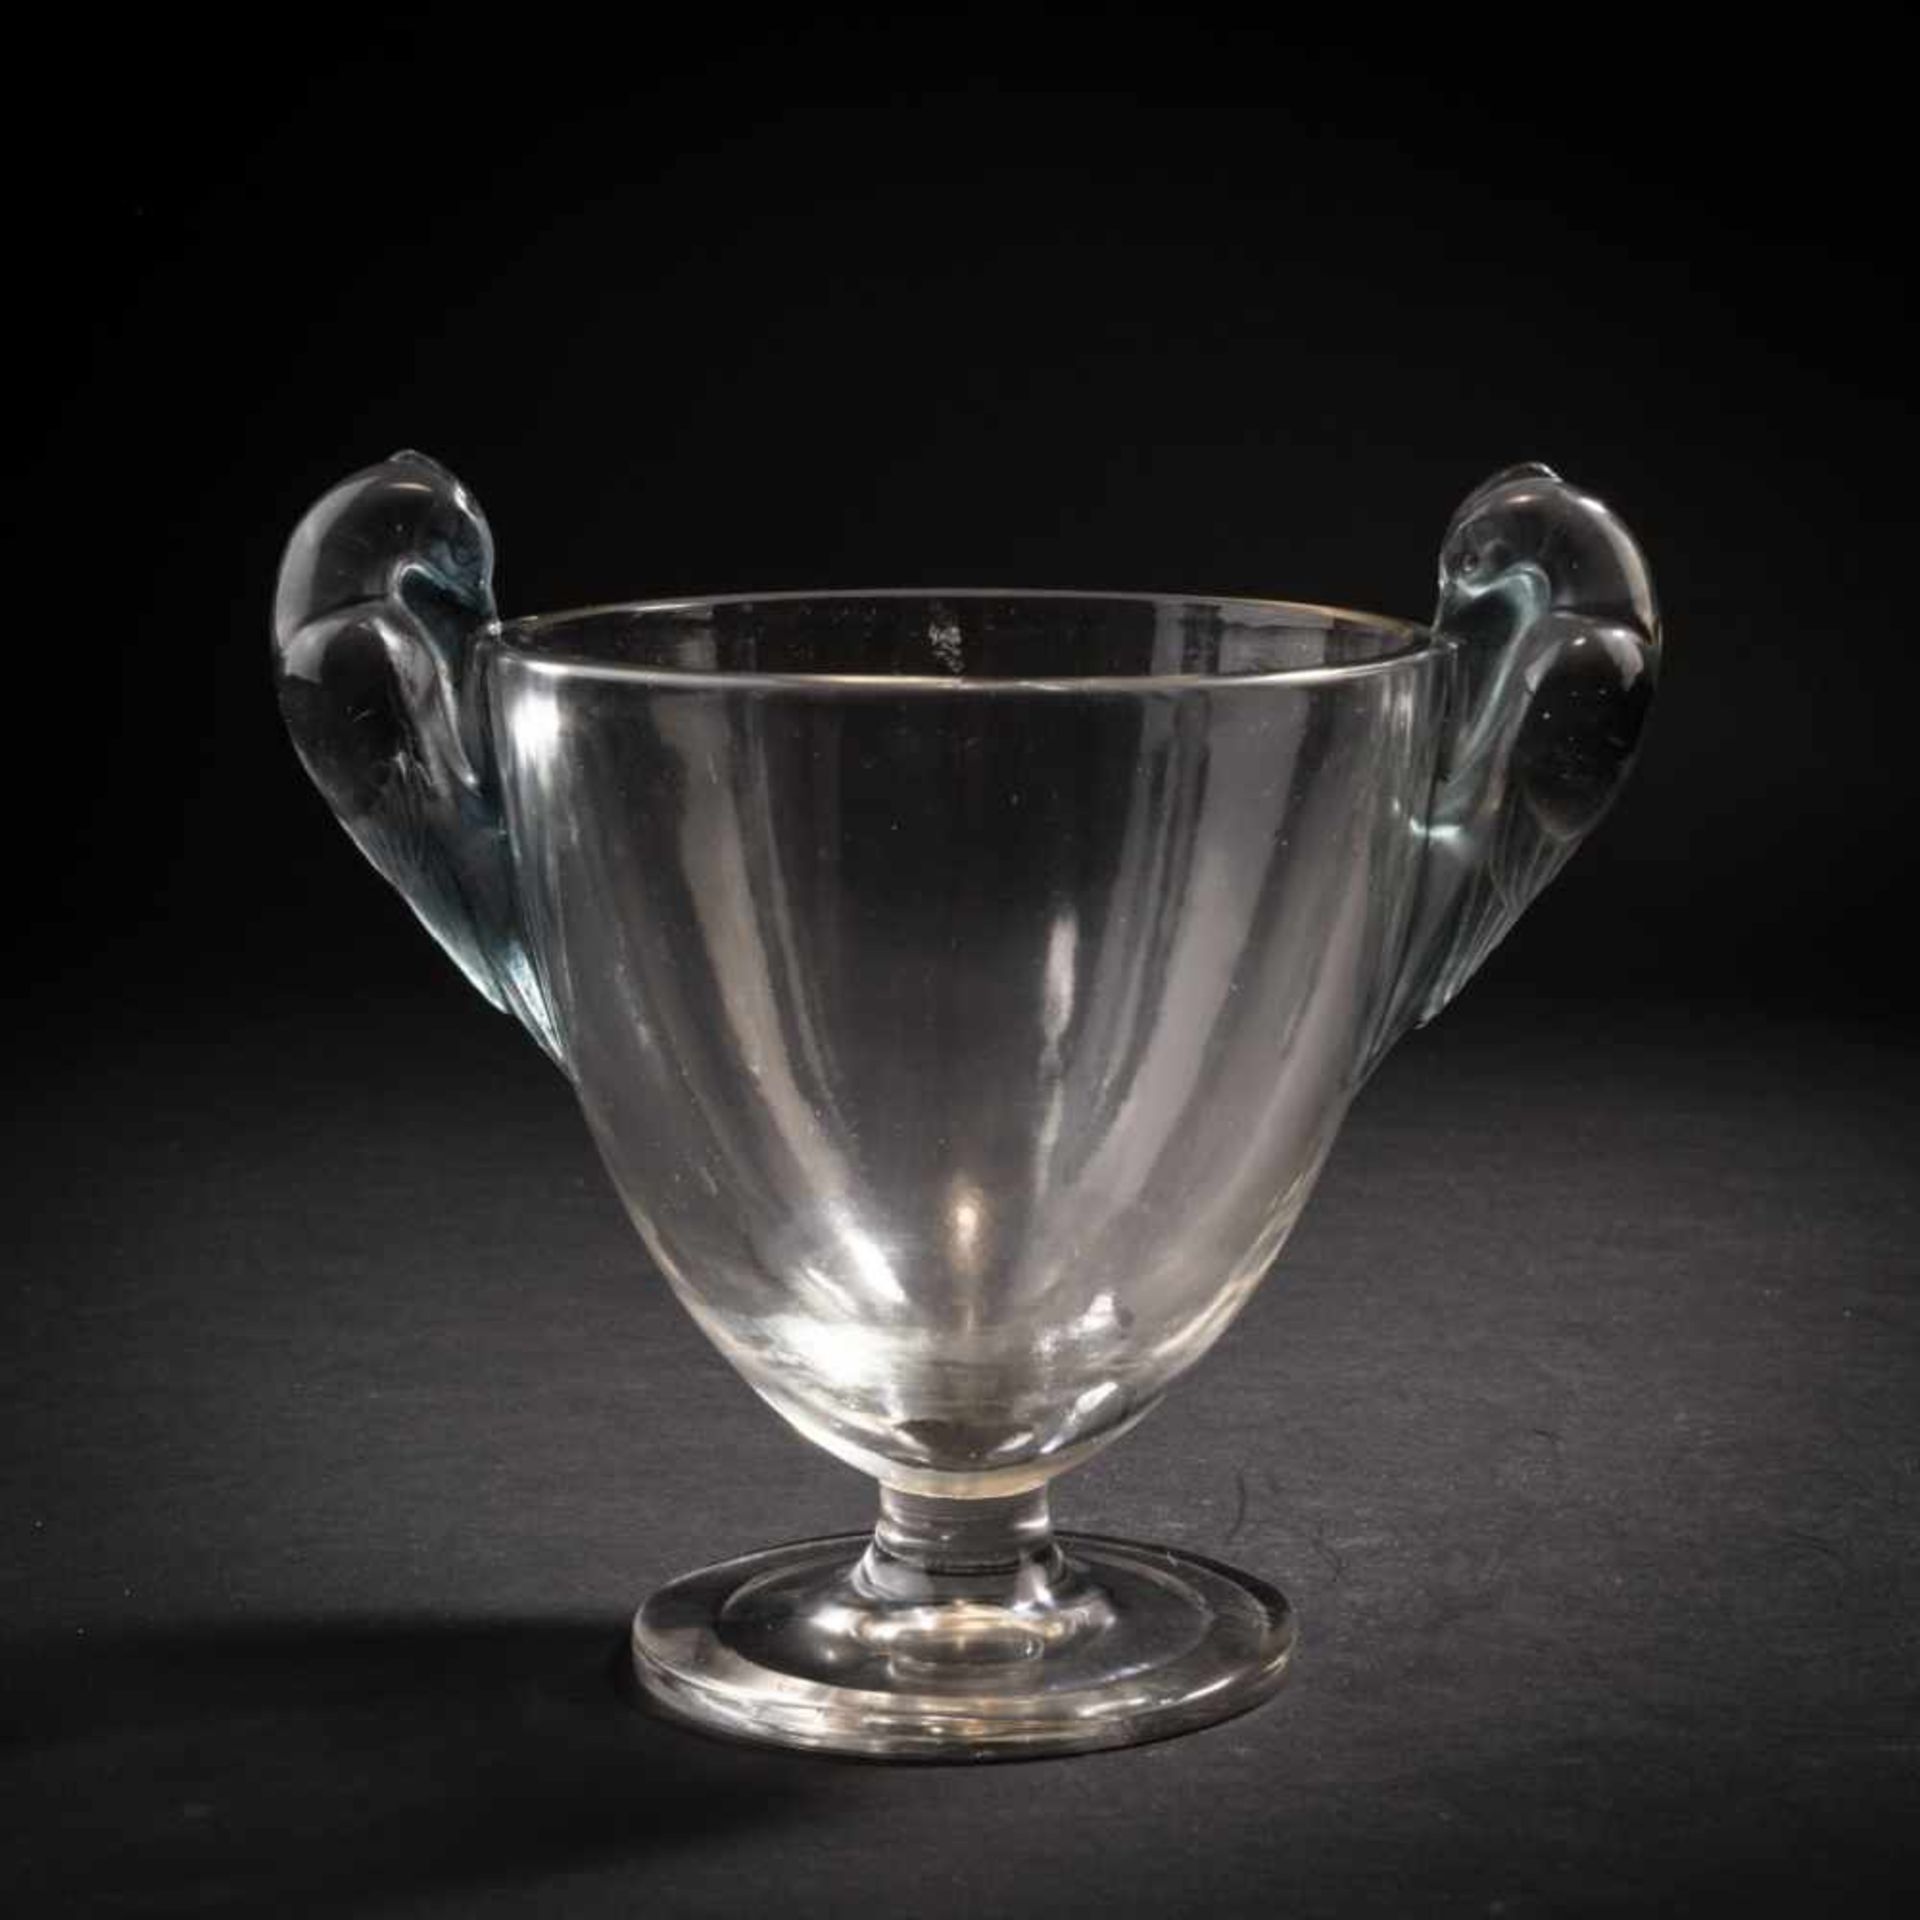 René Lalique, 'Ornis' vase, 1926'Ornis' vase, 1926H. 16.3 cm. Clear, mould-blown glass, partially